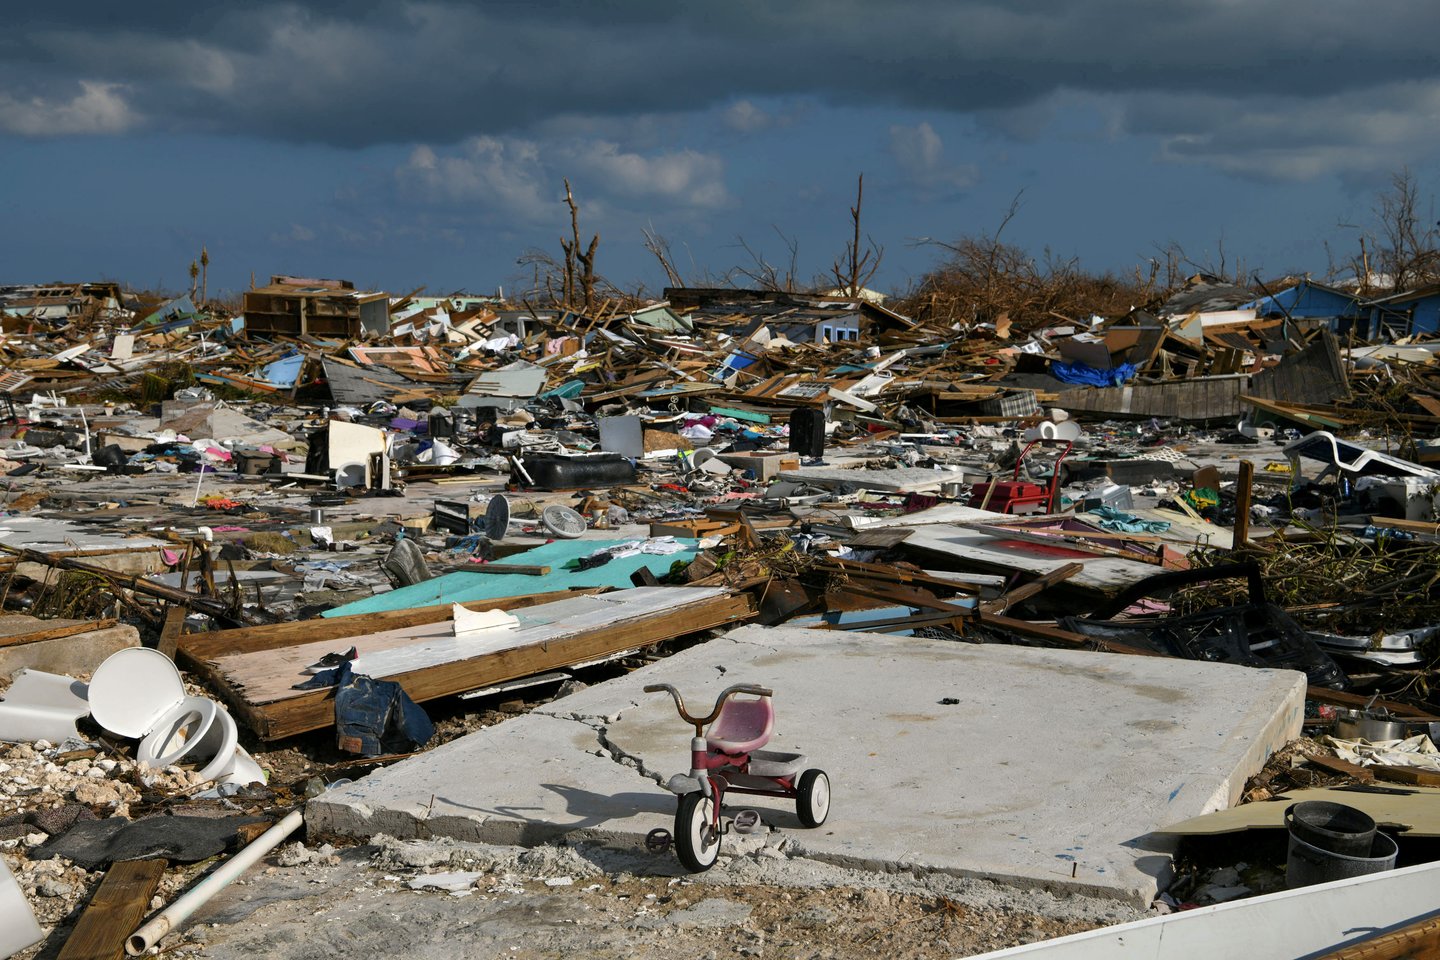  Bahamose po uragano „Dorian“ dingusiais yra laikoma maždaug 2,5 tūkst. žmonių, trečiadienį pranešė Bahamų Nacionalinė nepaprastųjų situacijų valdymo agentūra (NEMA).<br> Reuters/Scanpix nuotr.